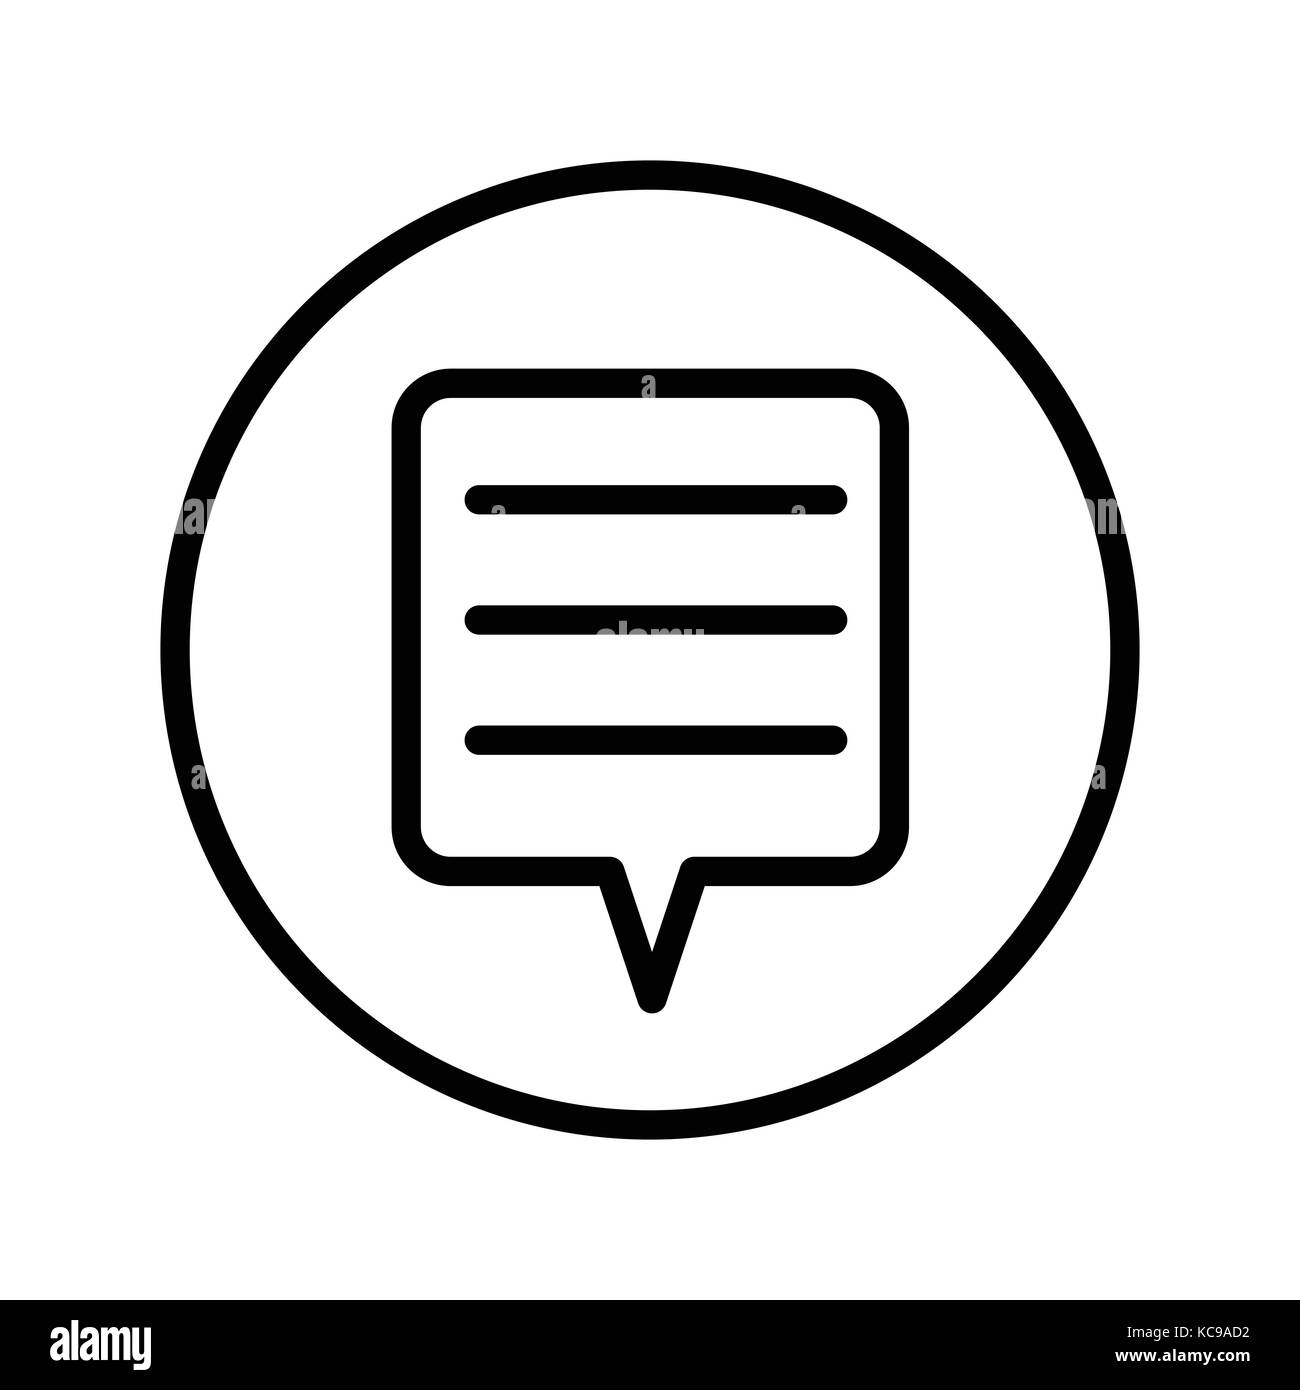 Der Vektor der Symbol "Chat" in der Circle Line, iconic Symbol in einem Kreis, auf weißem Hintergrund. Vektor ein futuristisches Design. Stock Vektor